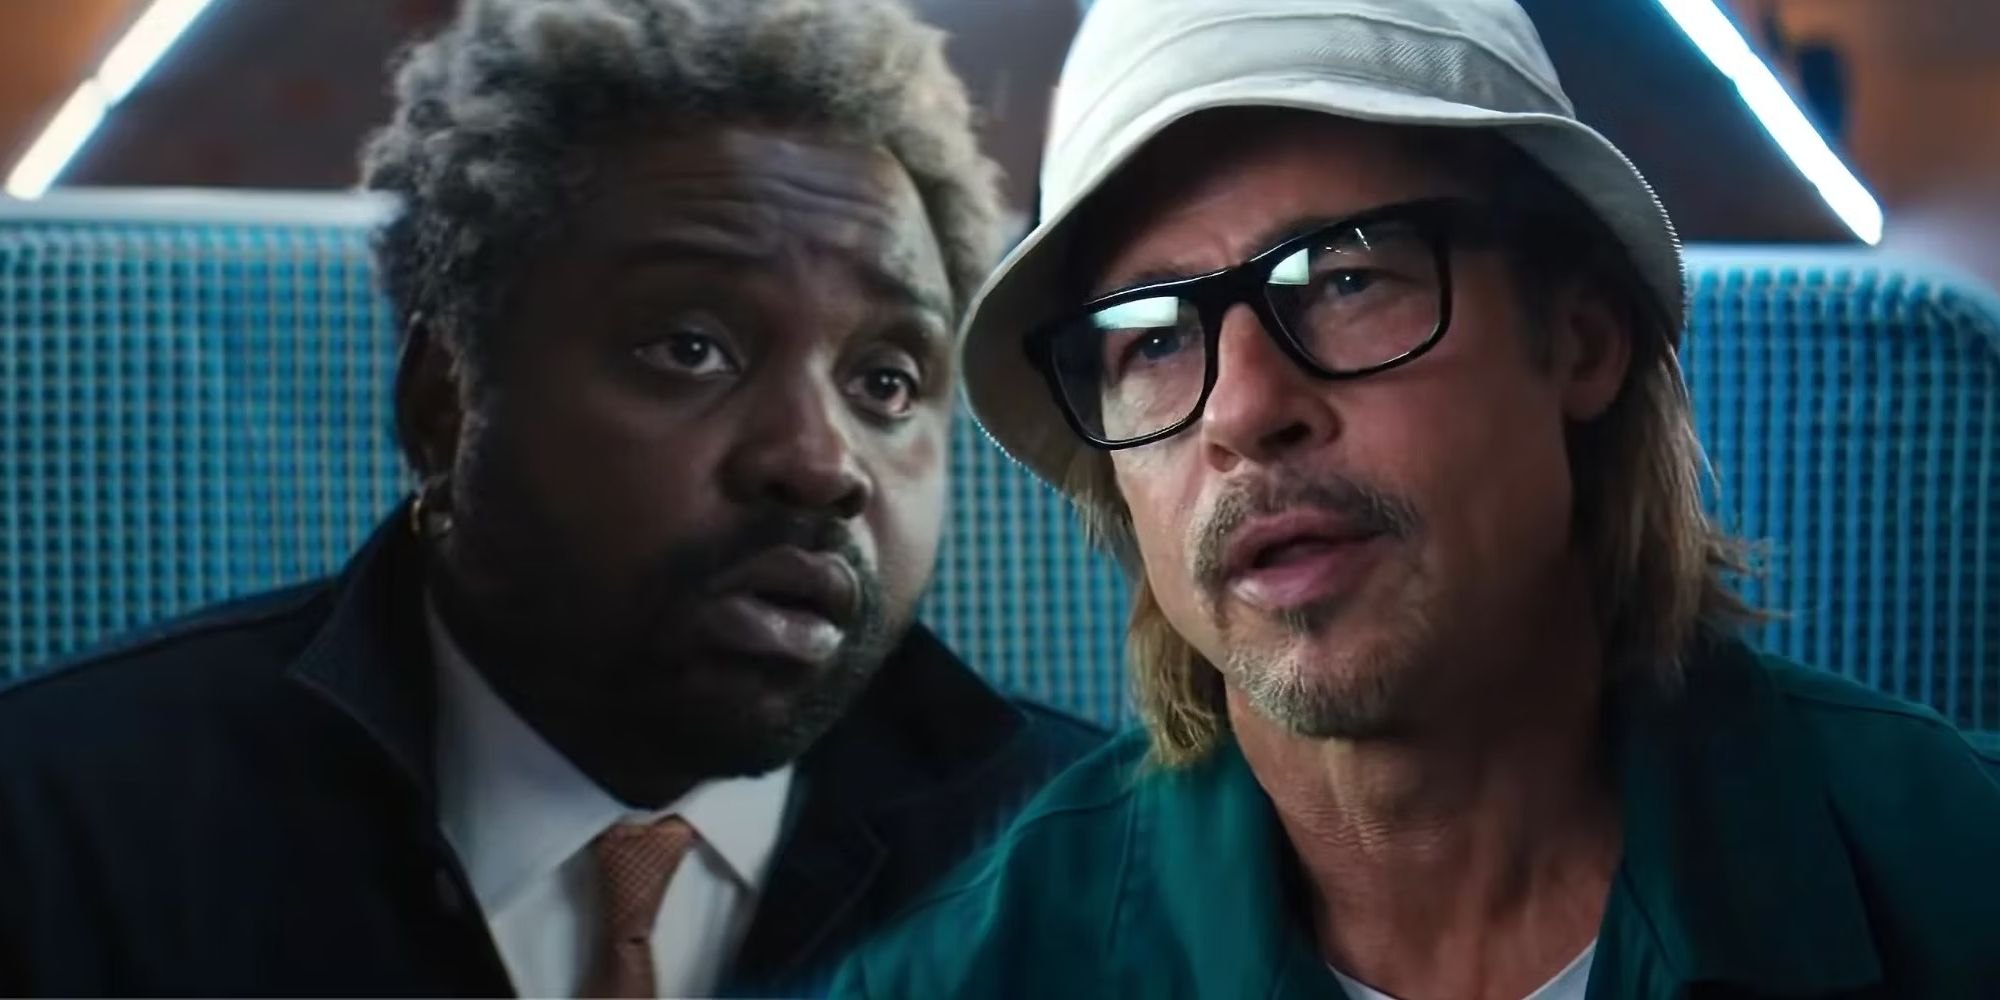 “La gente no entiende”: por qué una escena de pelea sentado en la película de acción de Brad Pitt, valorada en 239 millones de dólares, fue un gran desafío